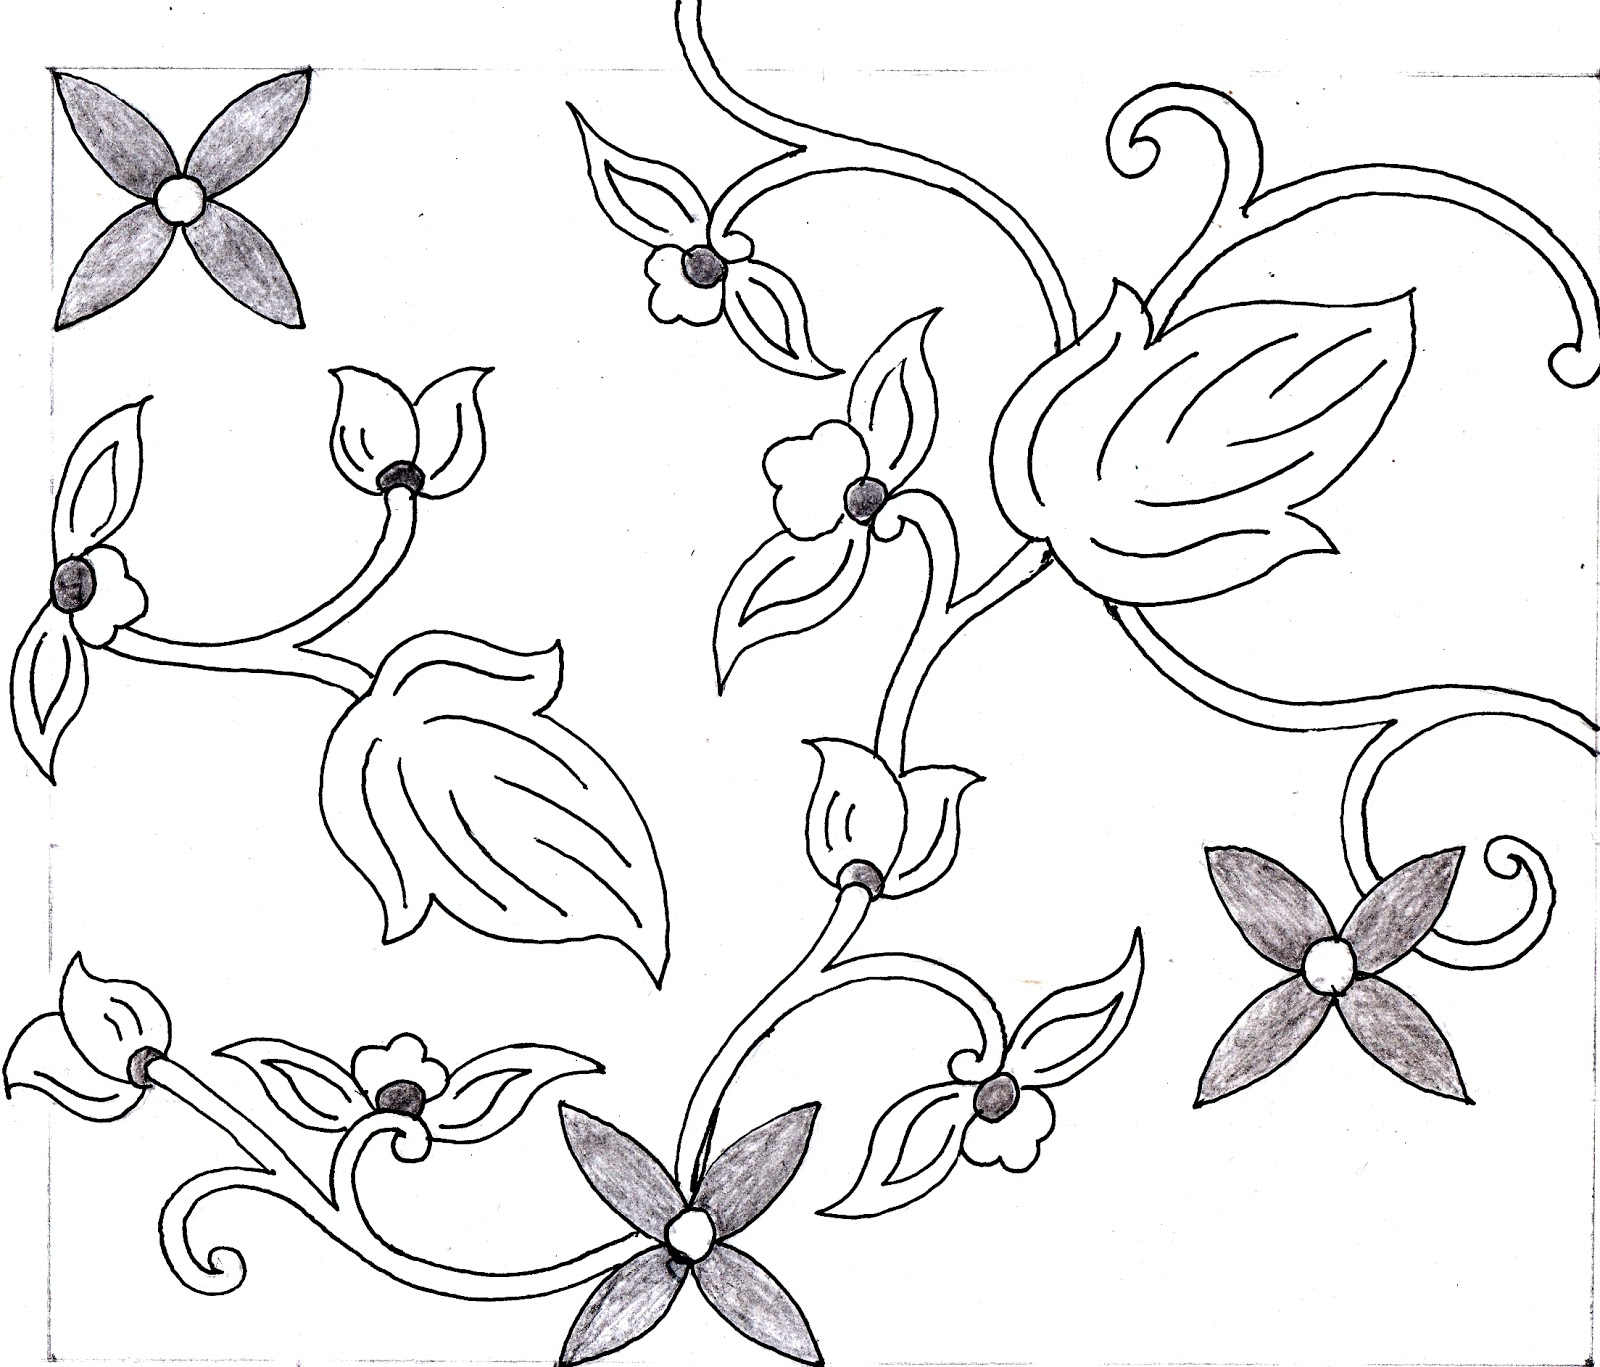 Gambar Motif Batik Cap 1 4 Gambar Canting Sketsa di Rebanas - Rebanas